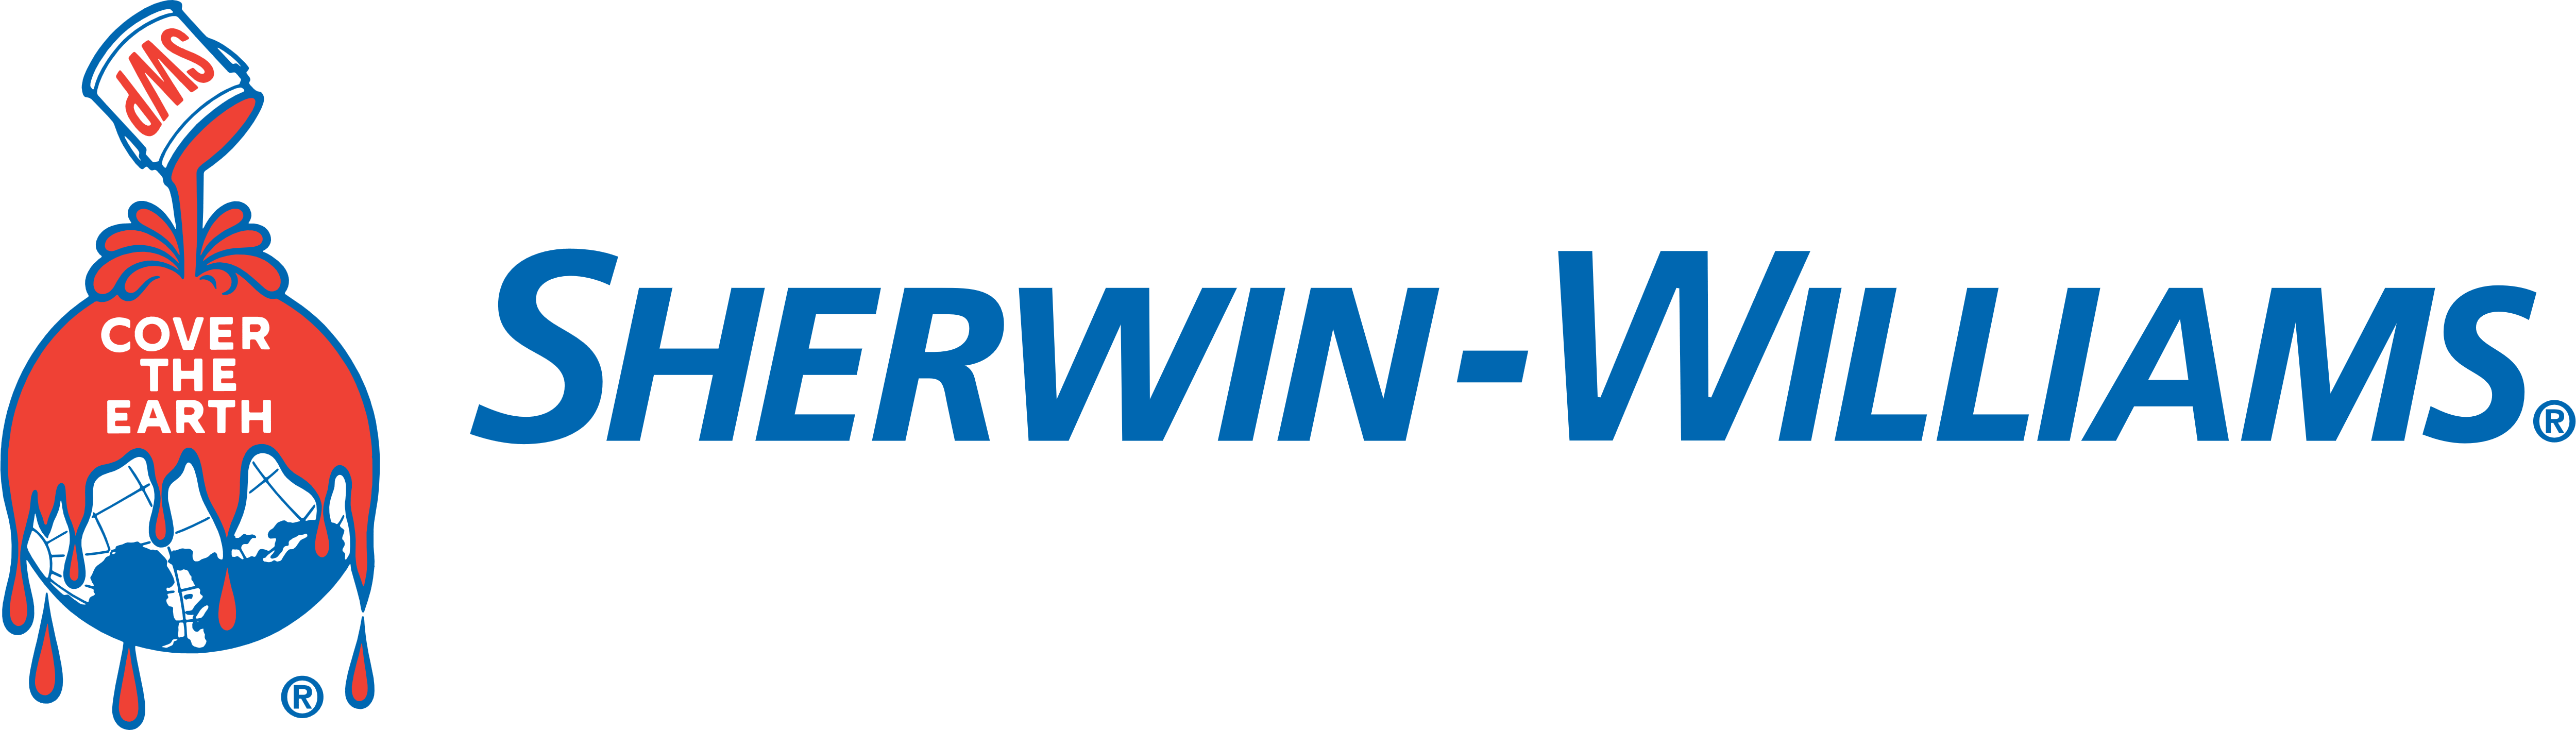 Sherwin Williams Logos Download